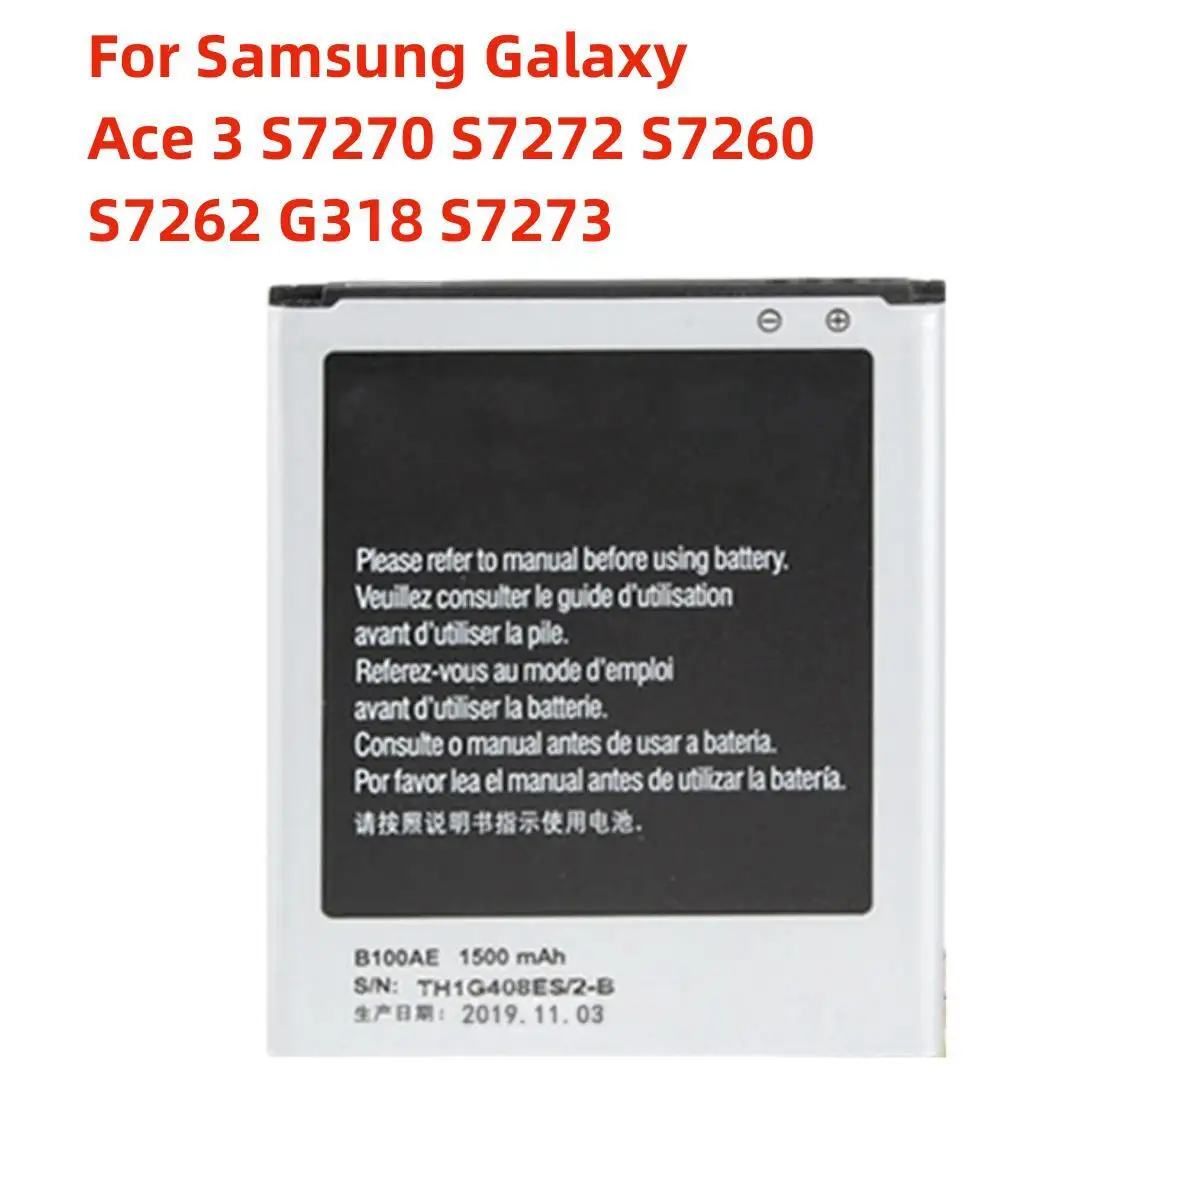 

Оригинальный аккумулятор B100AE 1500 мАч для Samsung Galaxy Ace 3 S7270 S7272 S7260 S7262 G318 S7273